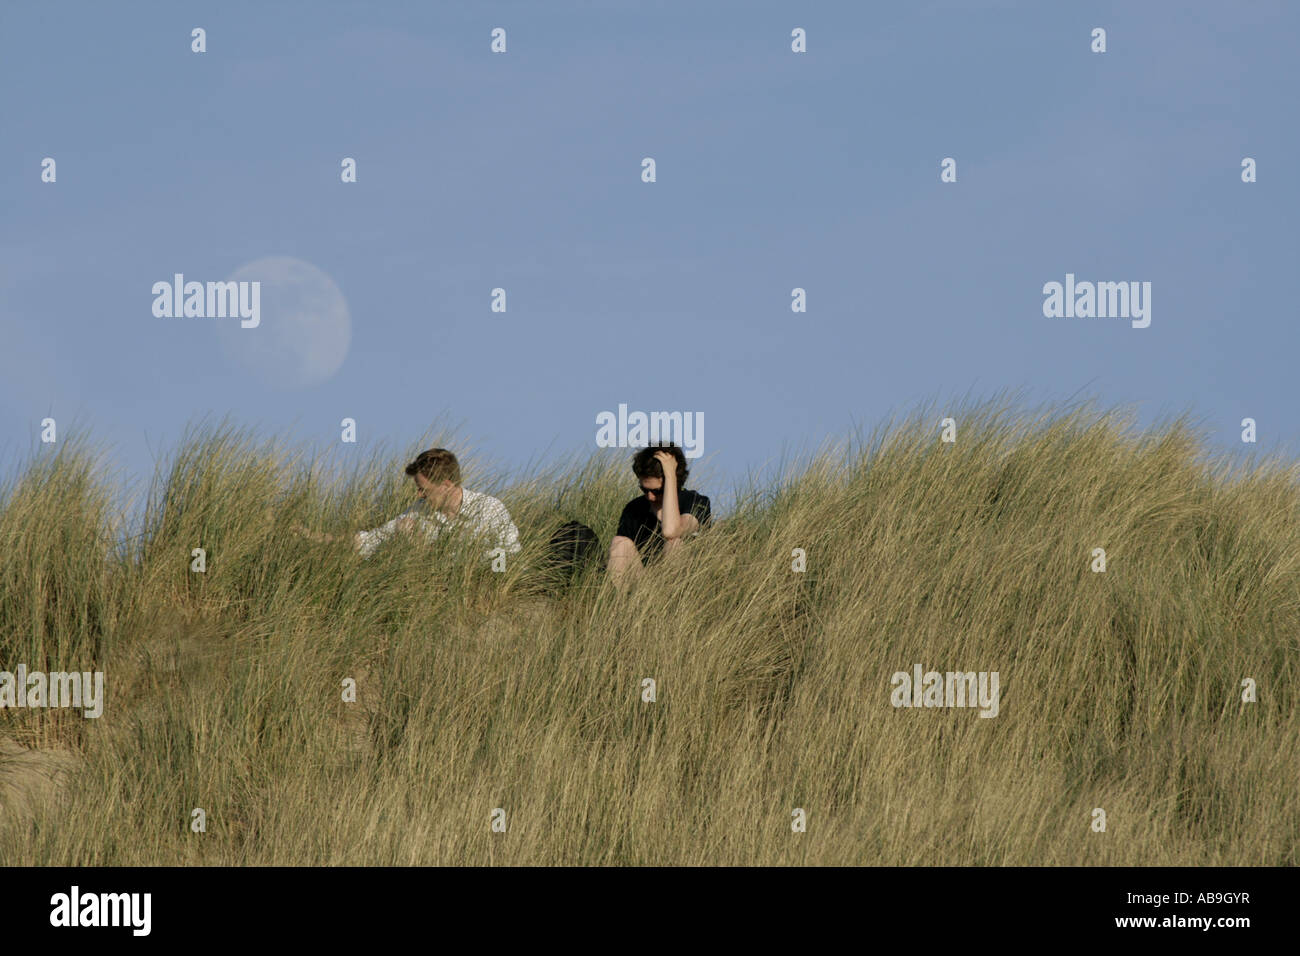 pair sittin on a dune, Netherlands, Zeeland Stock Photo